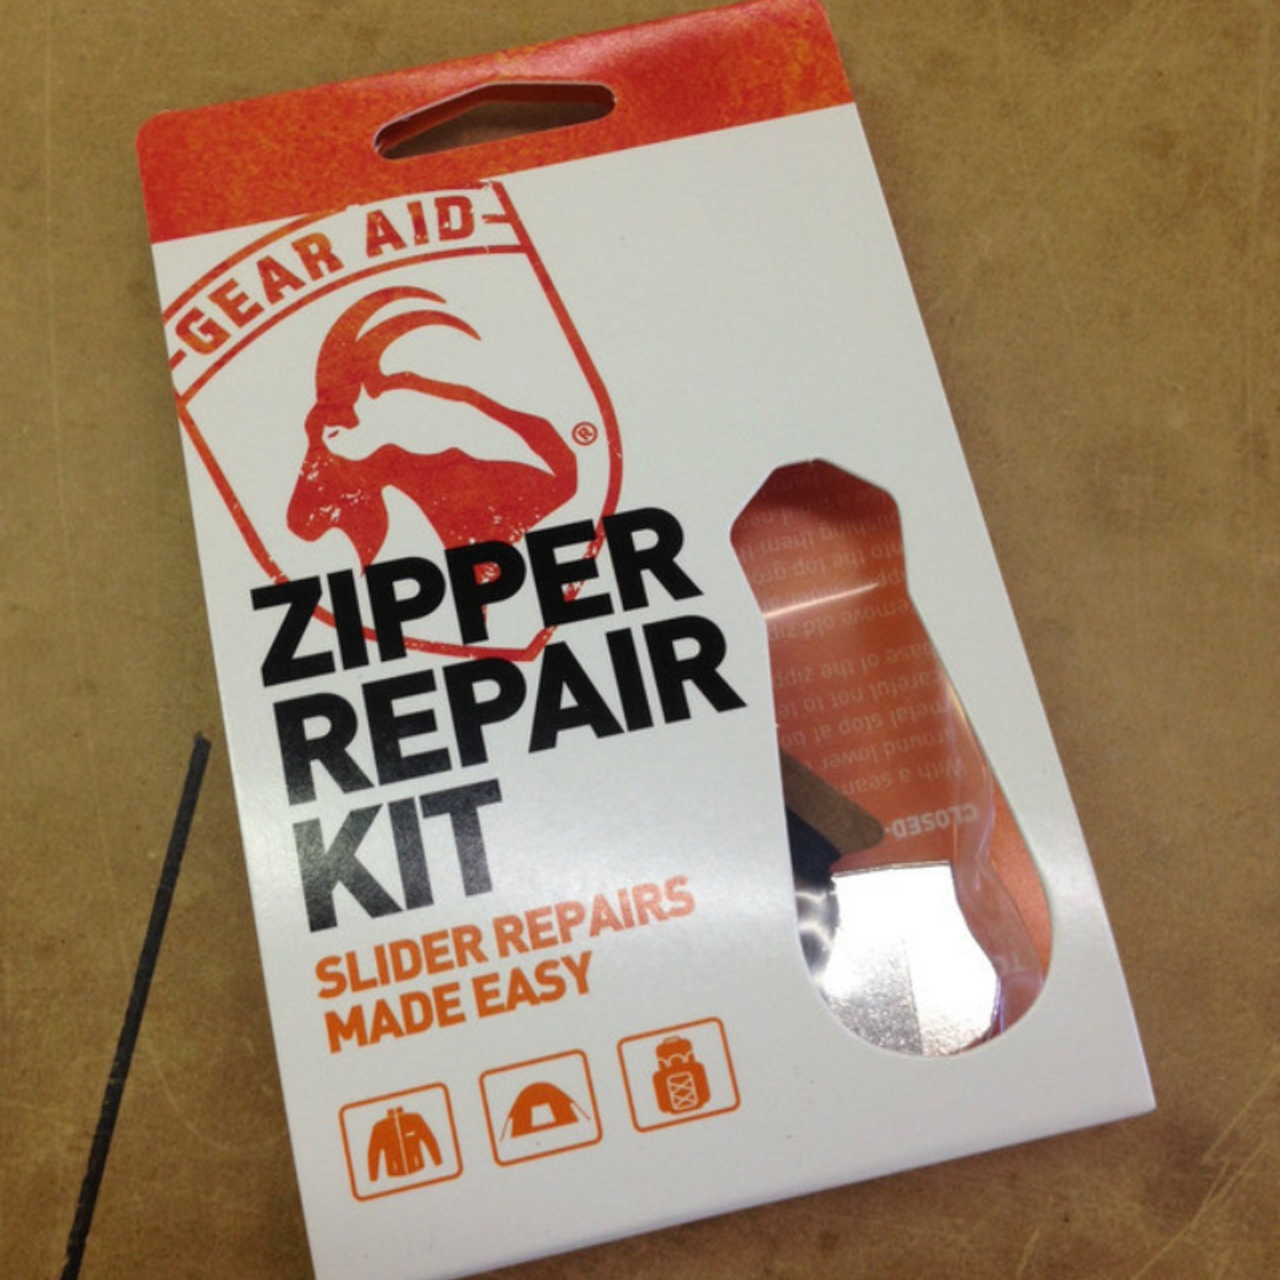 24 Sets Practical Safe Zipper Accessories Zipper Repair Kit Zipper